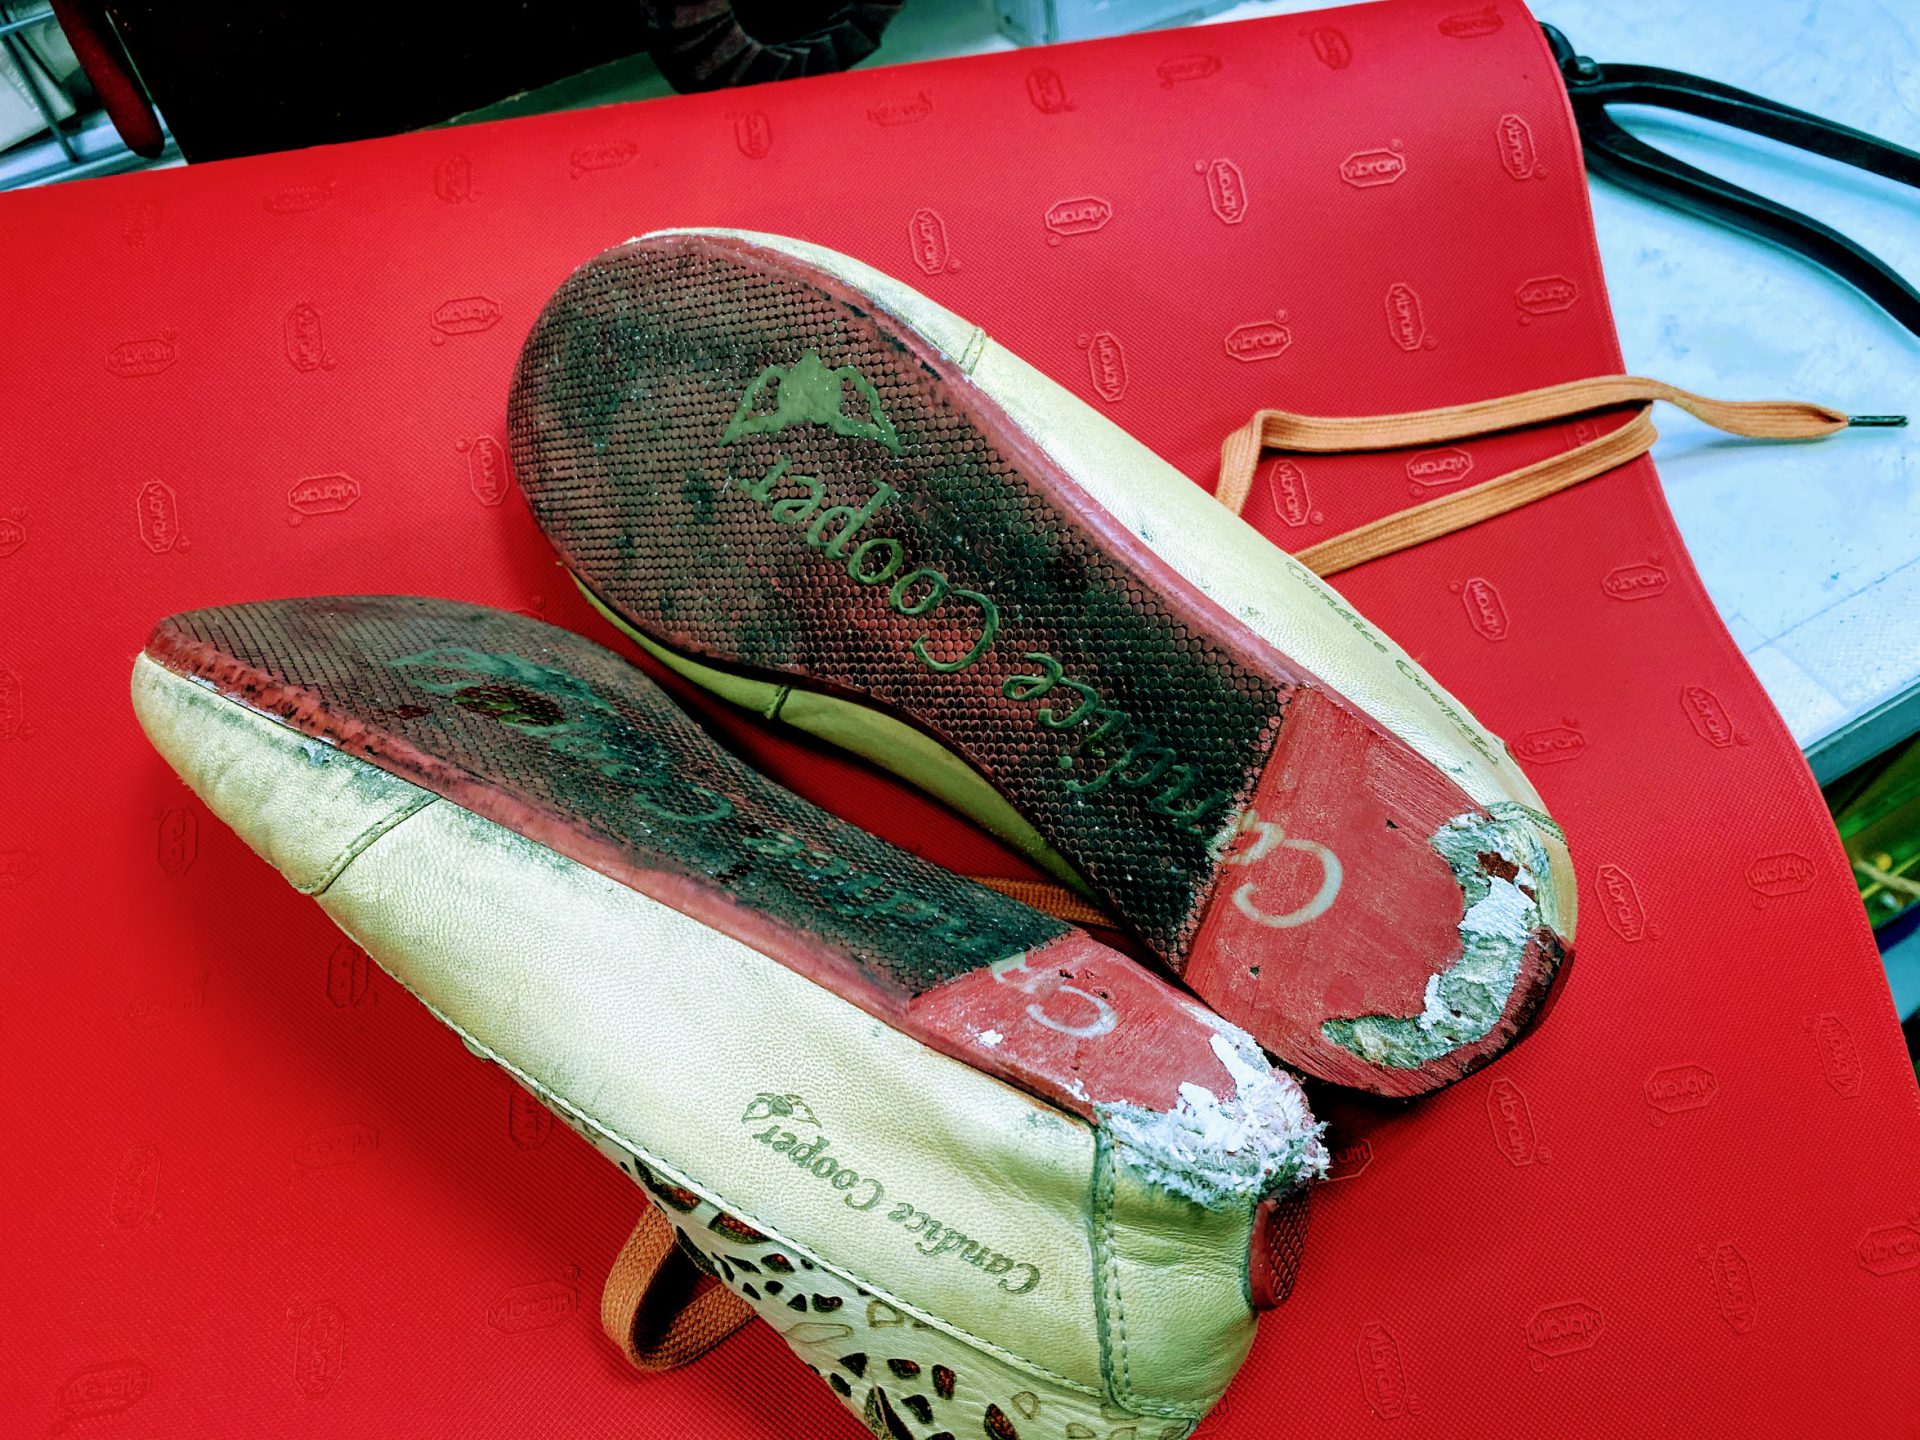 赤い靴底のスニーカーをオールソール修理しました Shoes Kuratomi 大濠本店 Blog